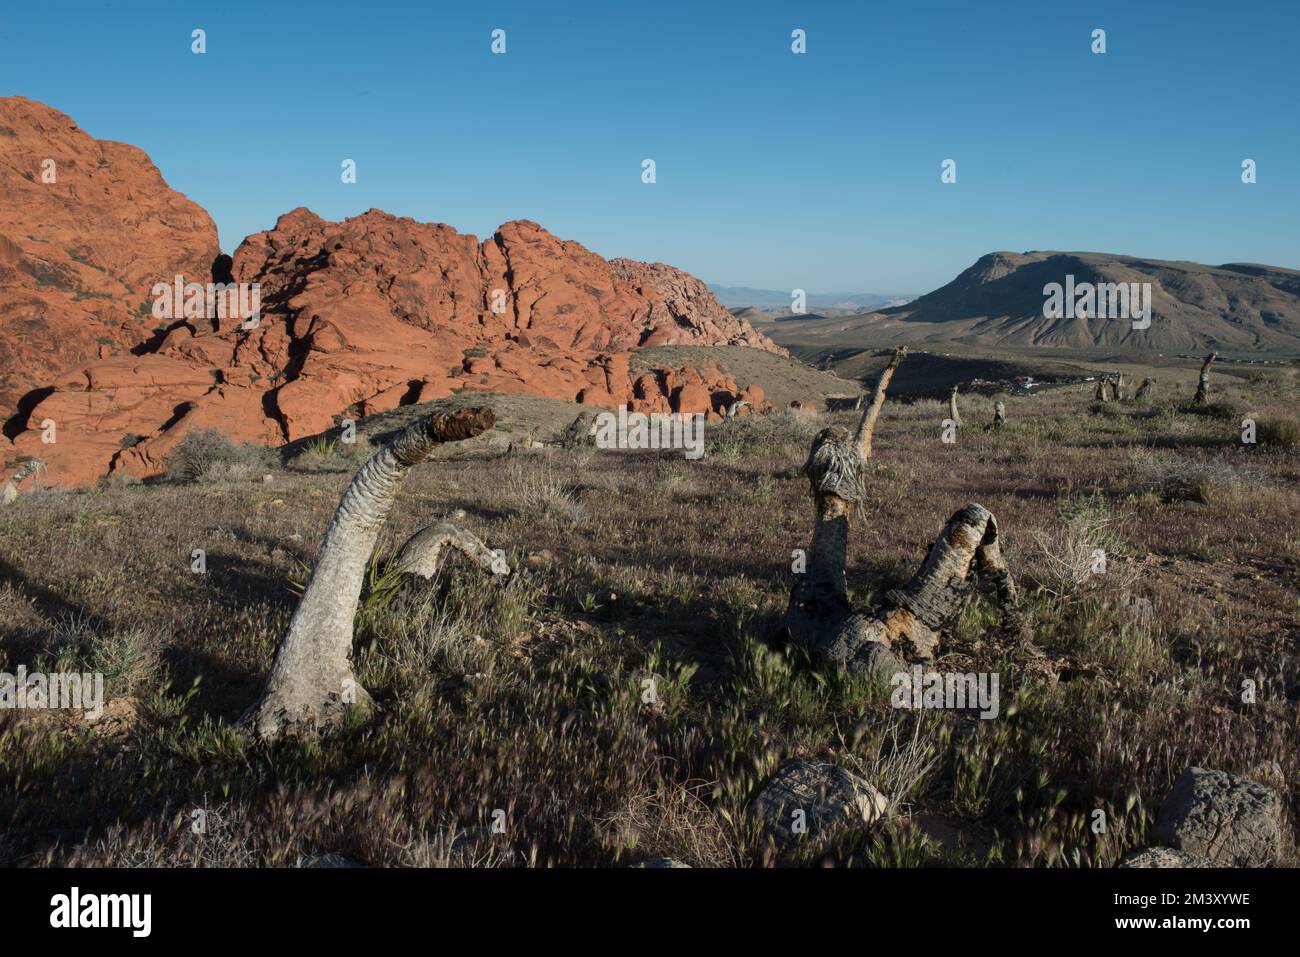 Die farbenfrohe Landschaft der Red Rock National Conservation Area mit toten Yukken in der Nähe von Las Vegas, Nevada, USA. Stockfoto